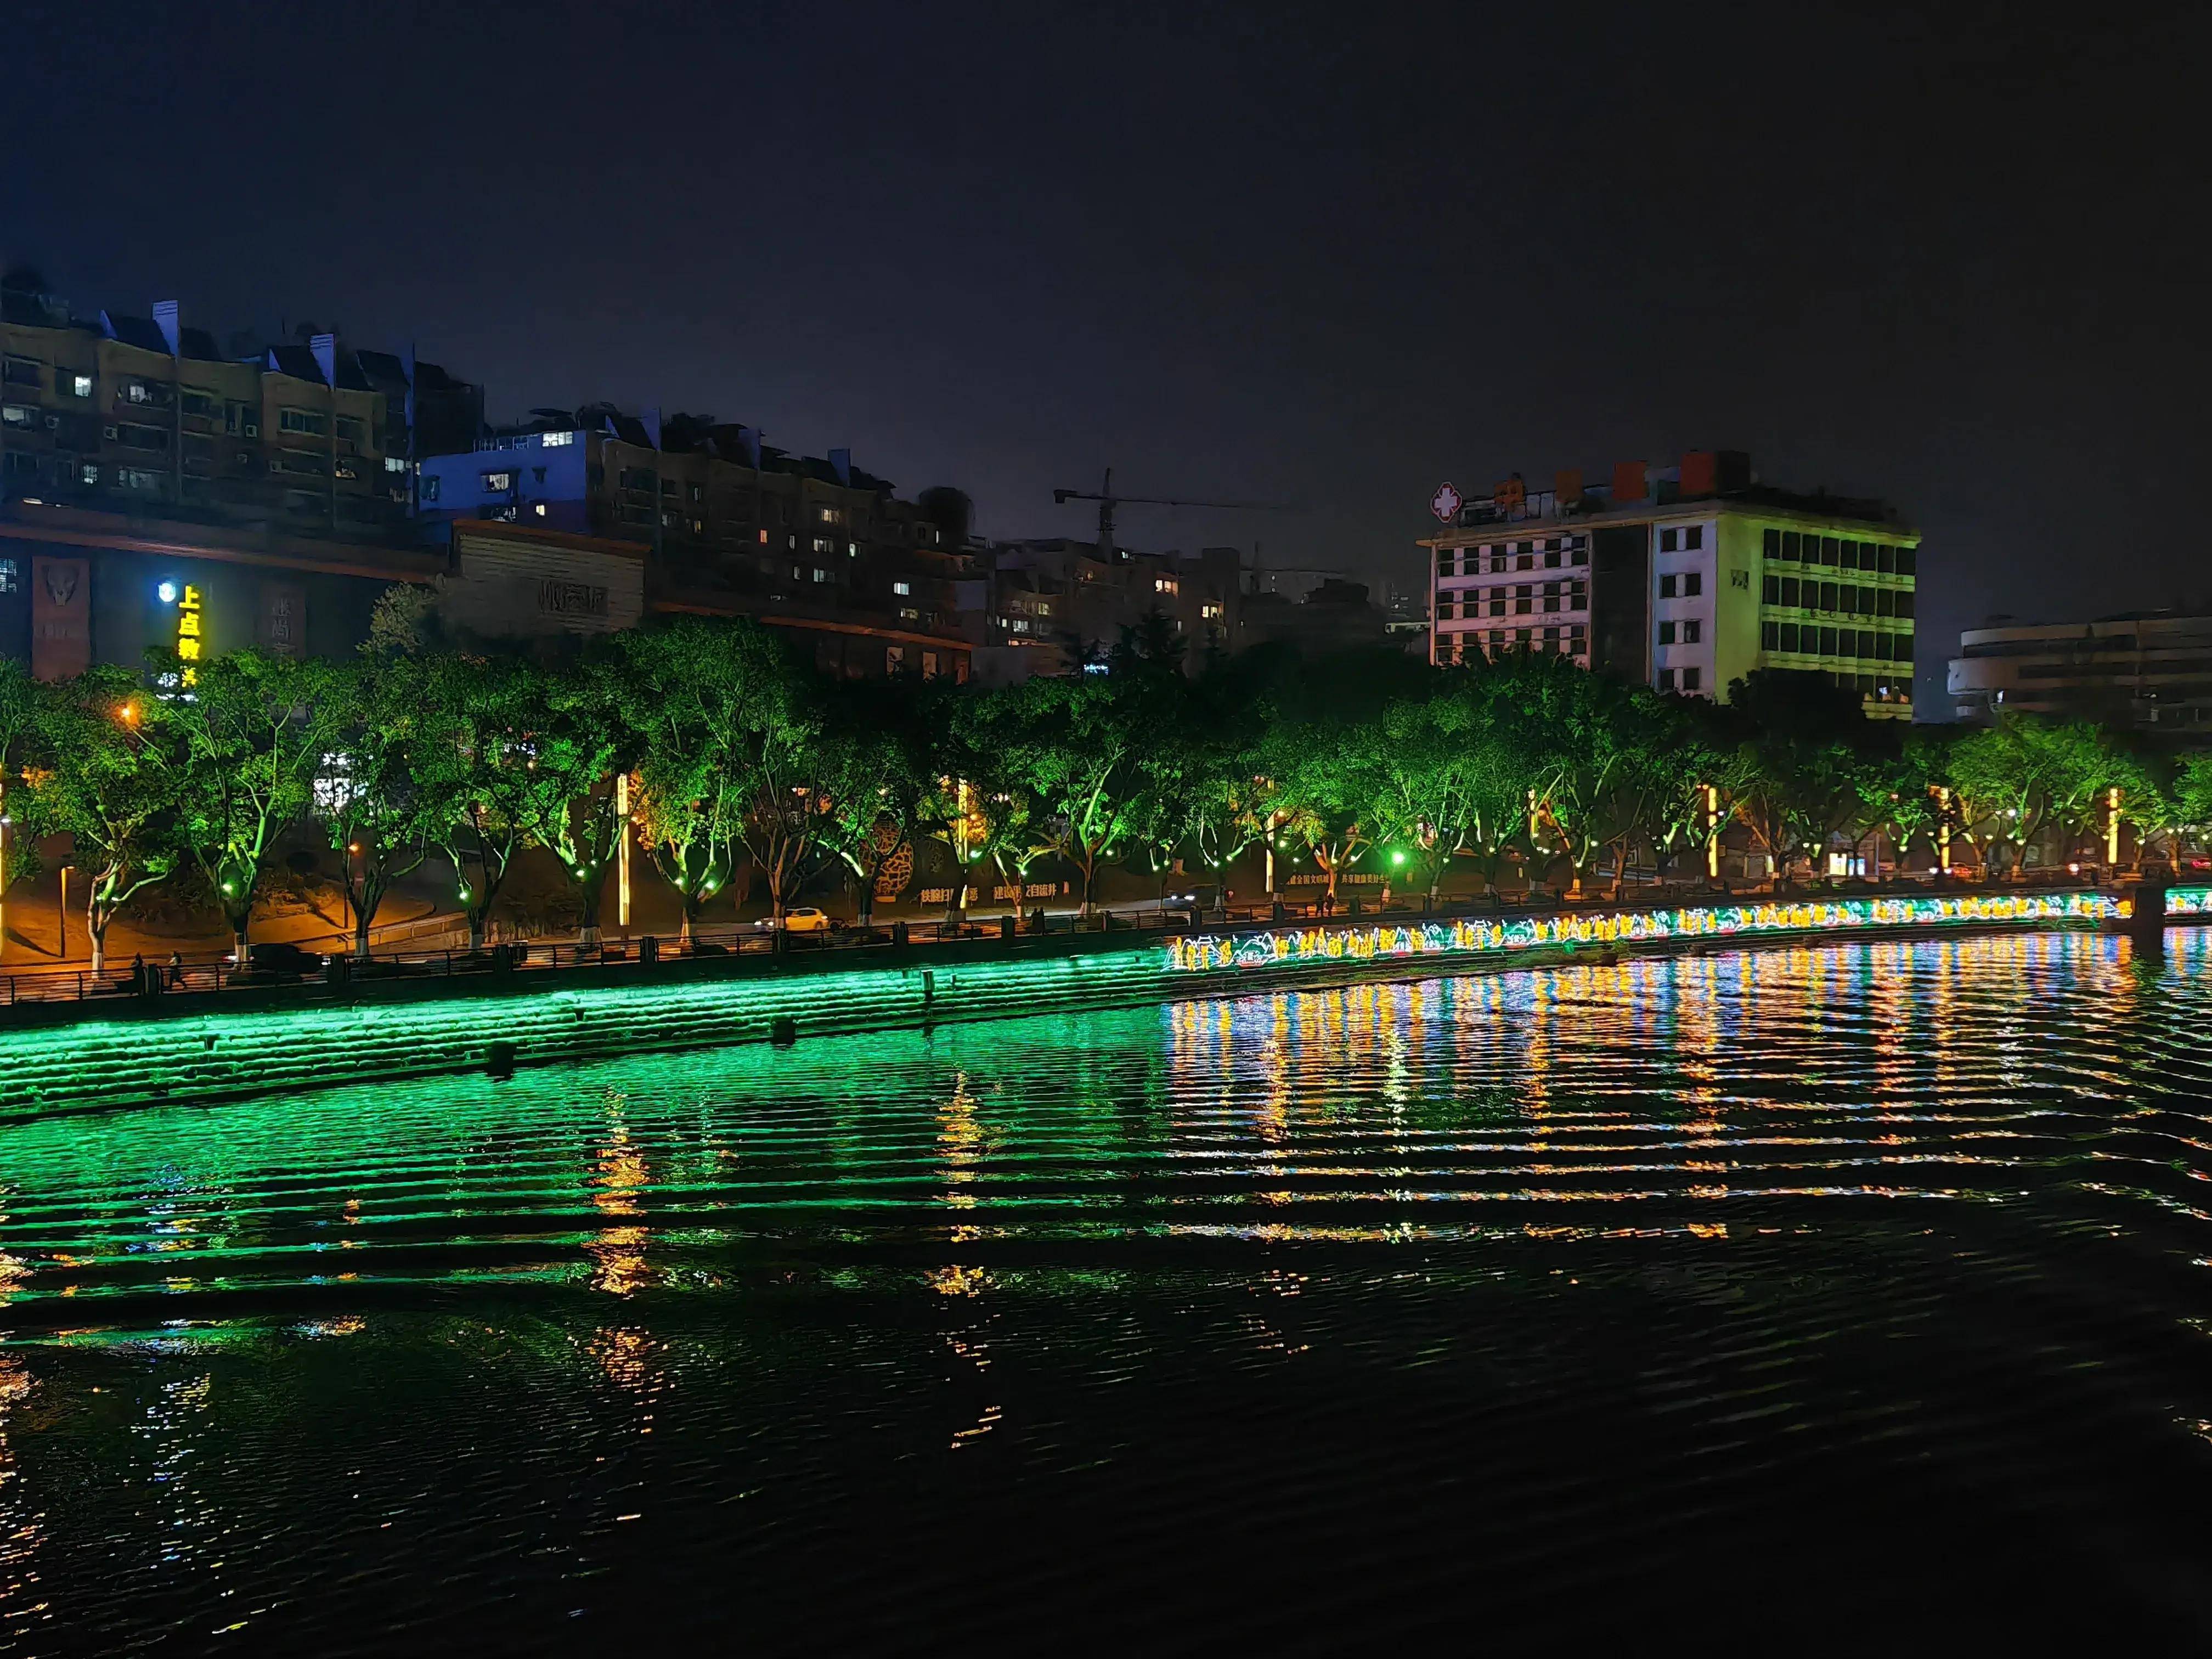 自贡釜溪河的灯光秀